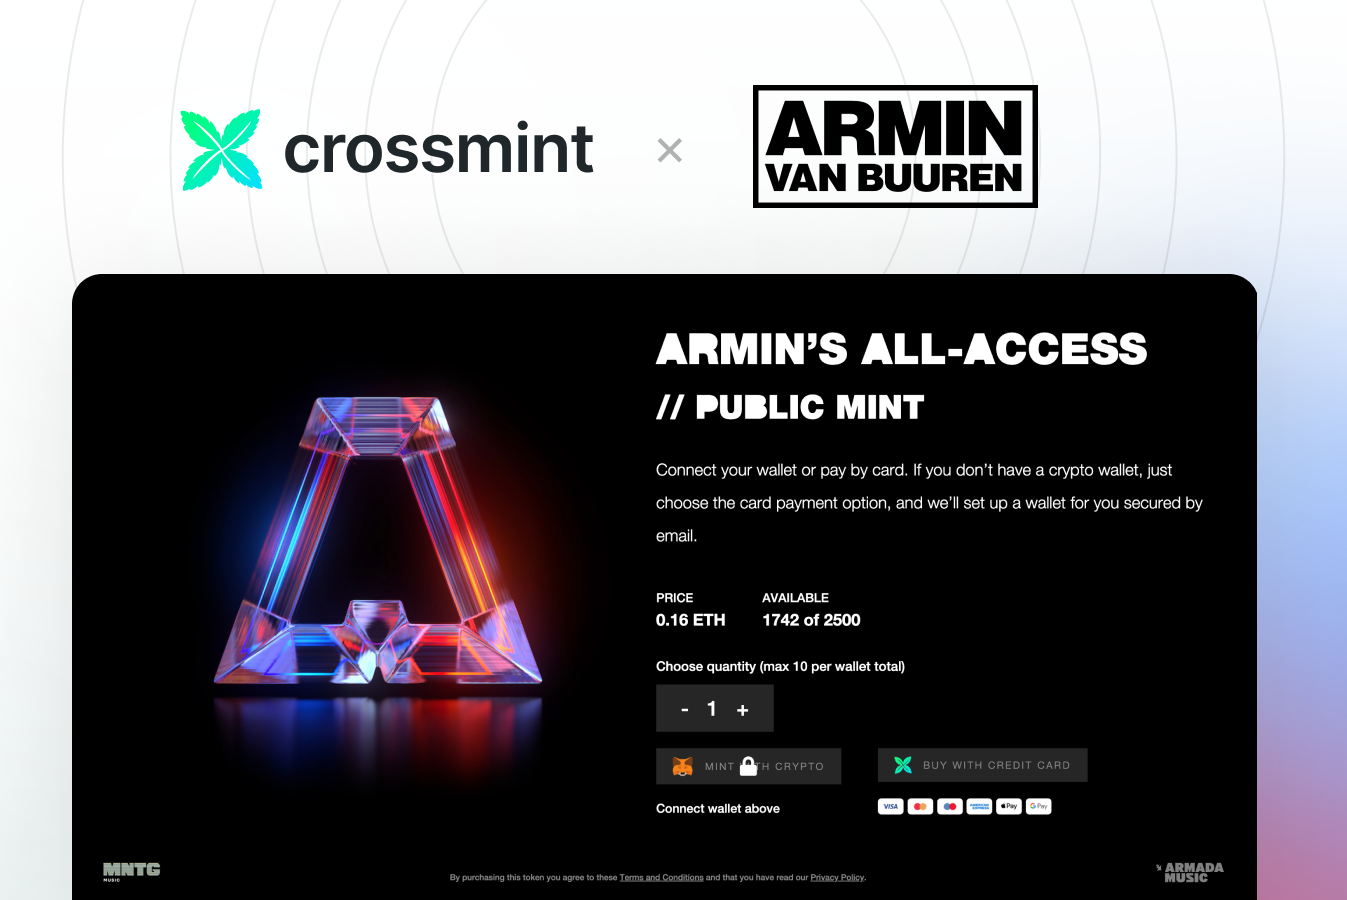 Crossmint Partners with Armin van Buuren